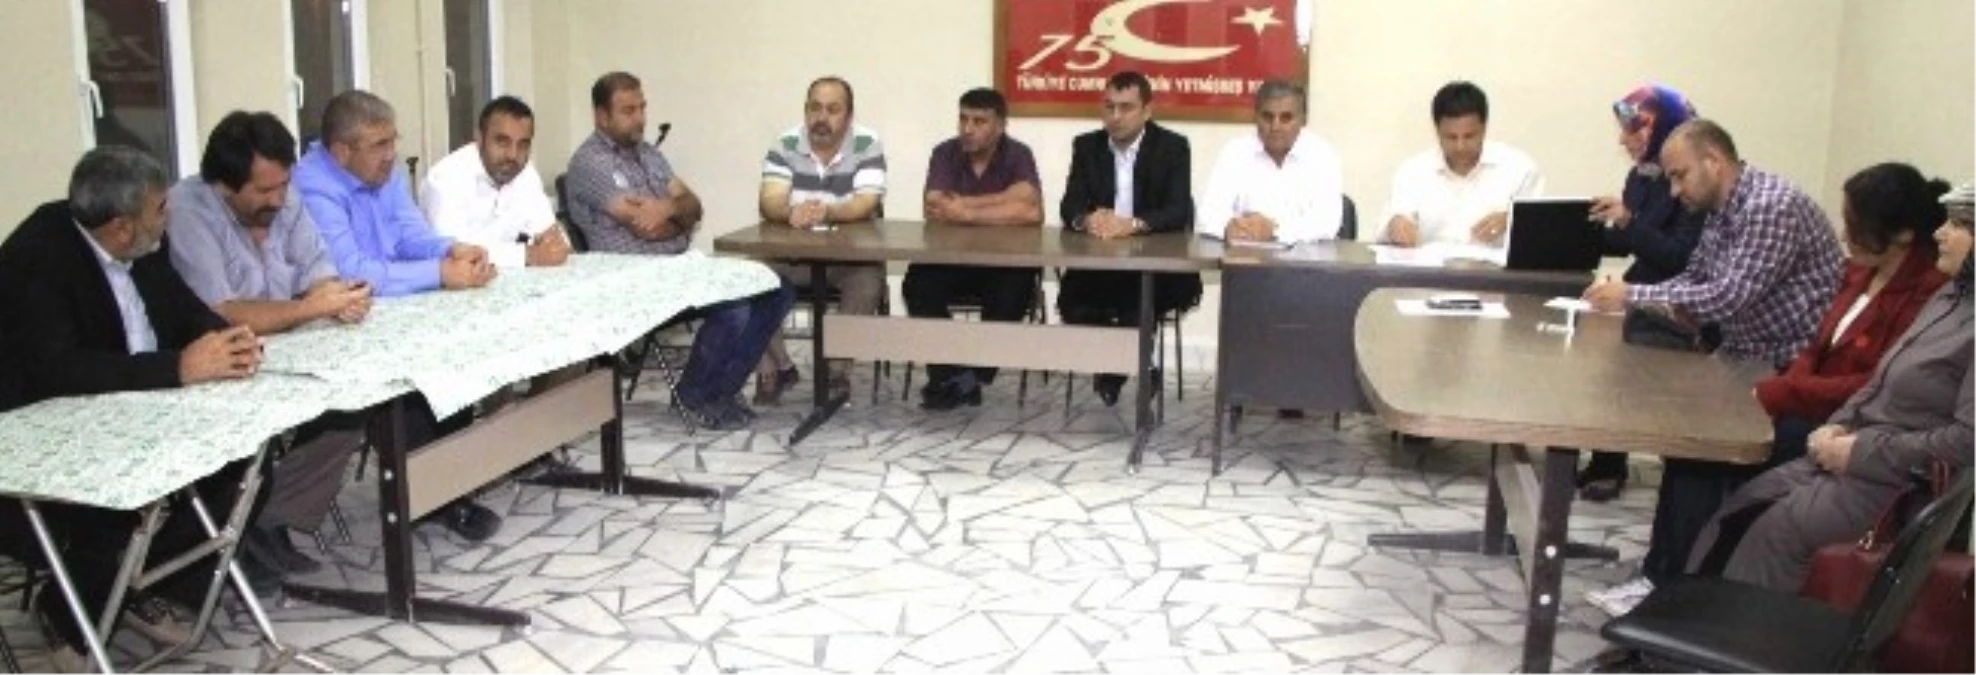 AK Parti Afyonkarahisar Merkez İlçe Yönetim Kurulu Toplantısı